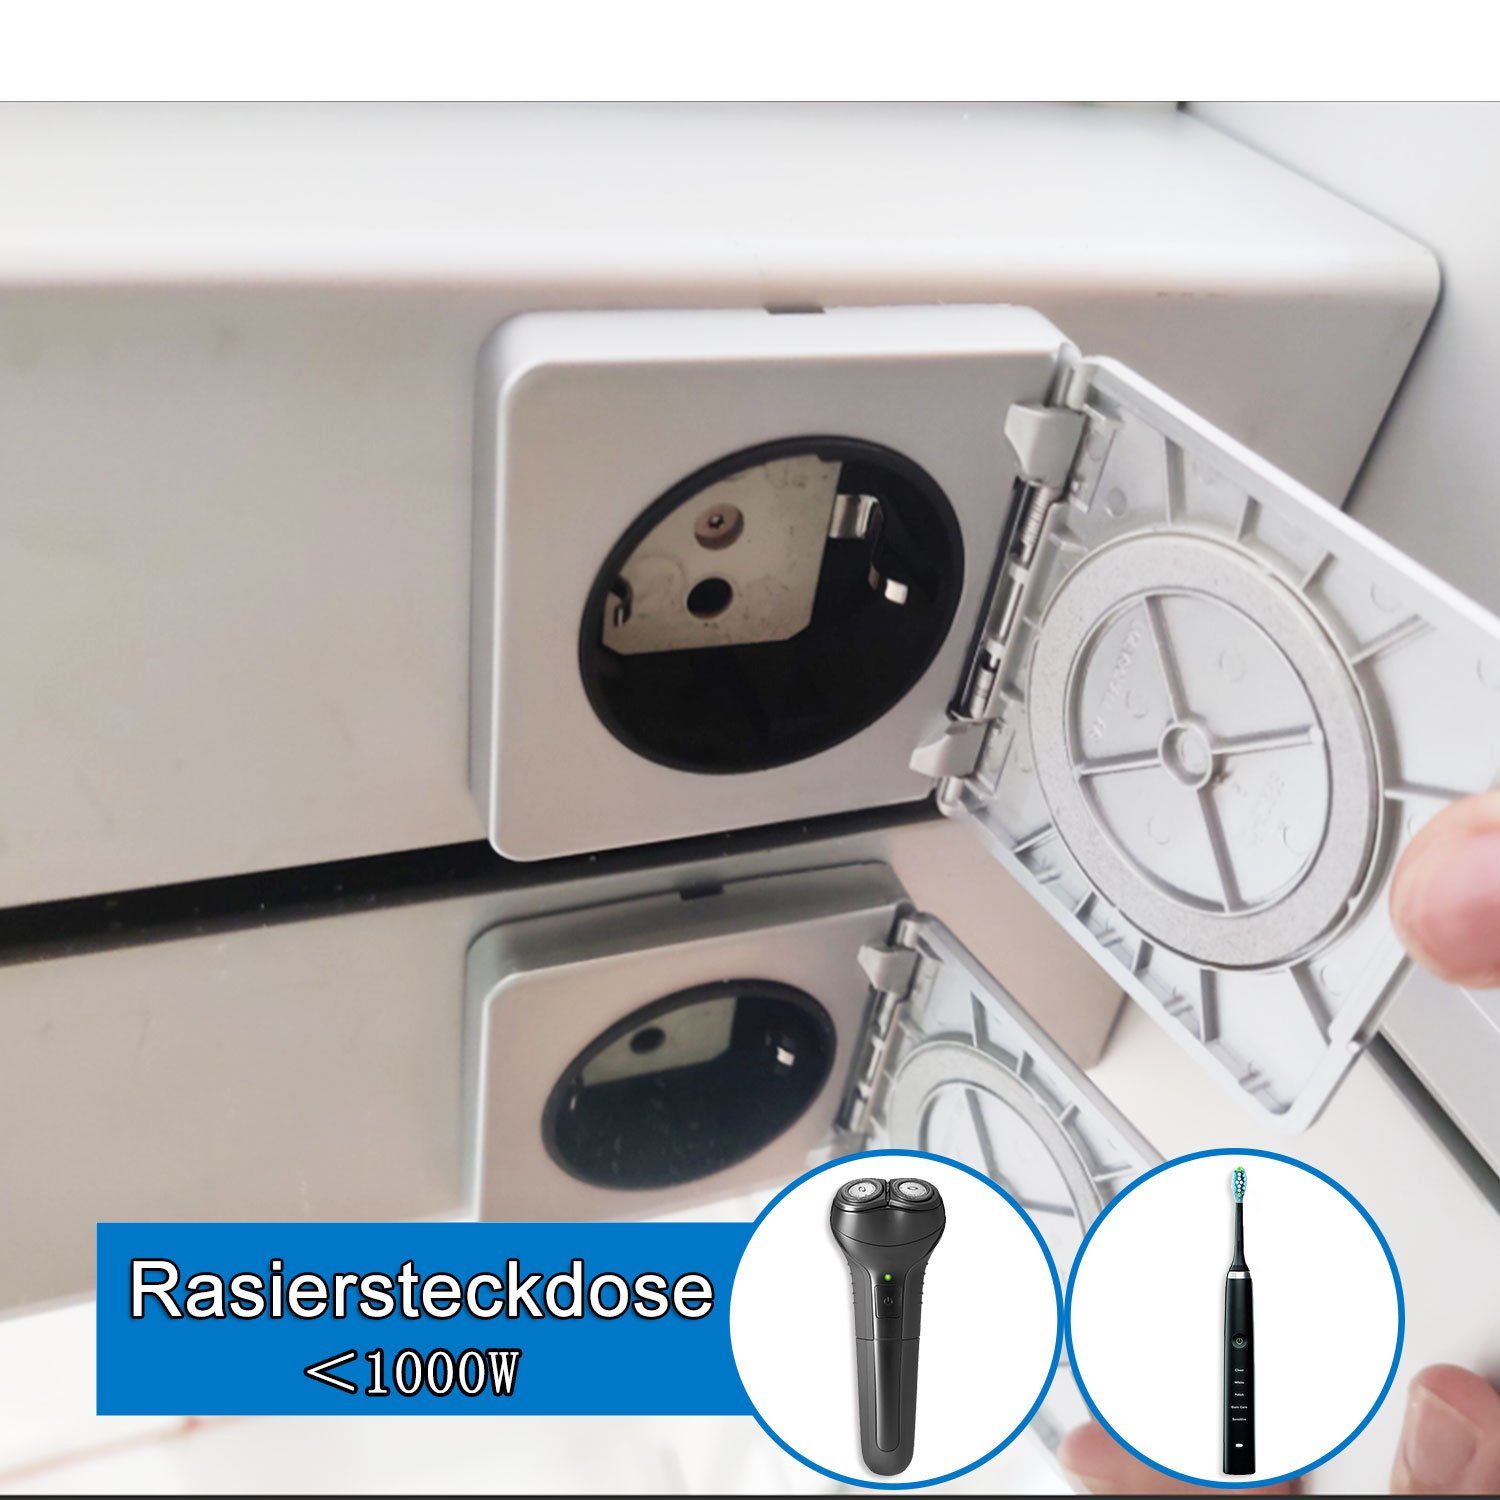 duschspa Spiegelschrank LED Memory-Funktion Kalt/Neutral/Warmweiß dimmbar Touch/Wandschalter, Beschlagfrei Beleuchtung